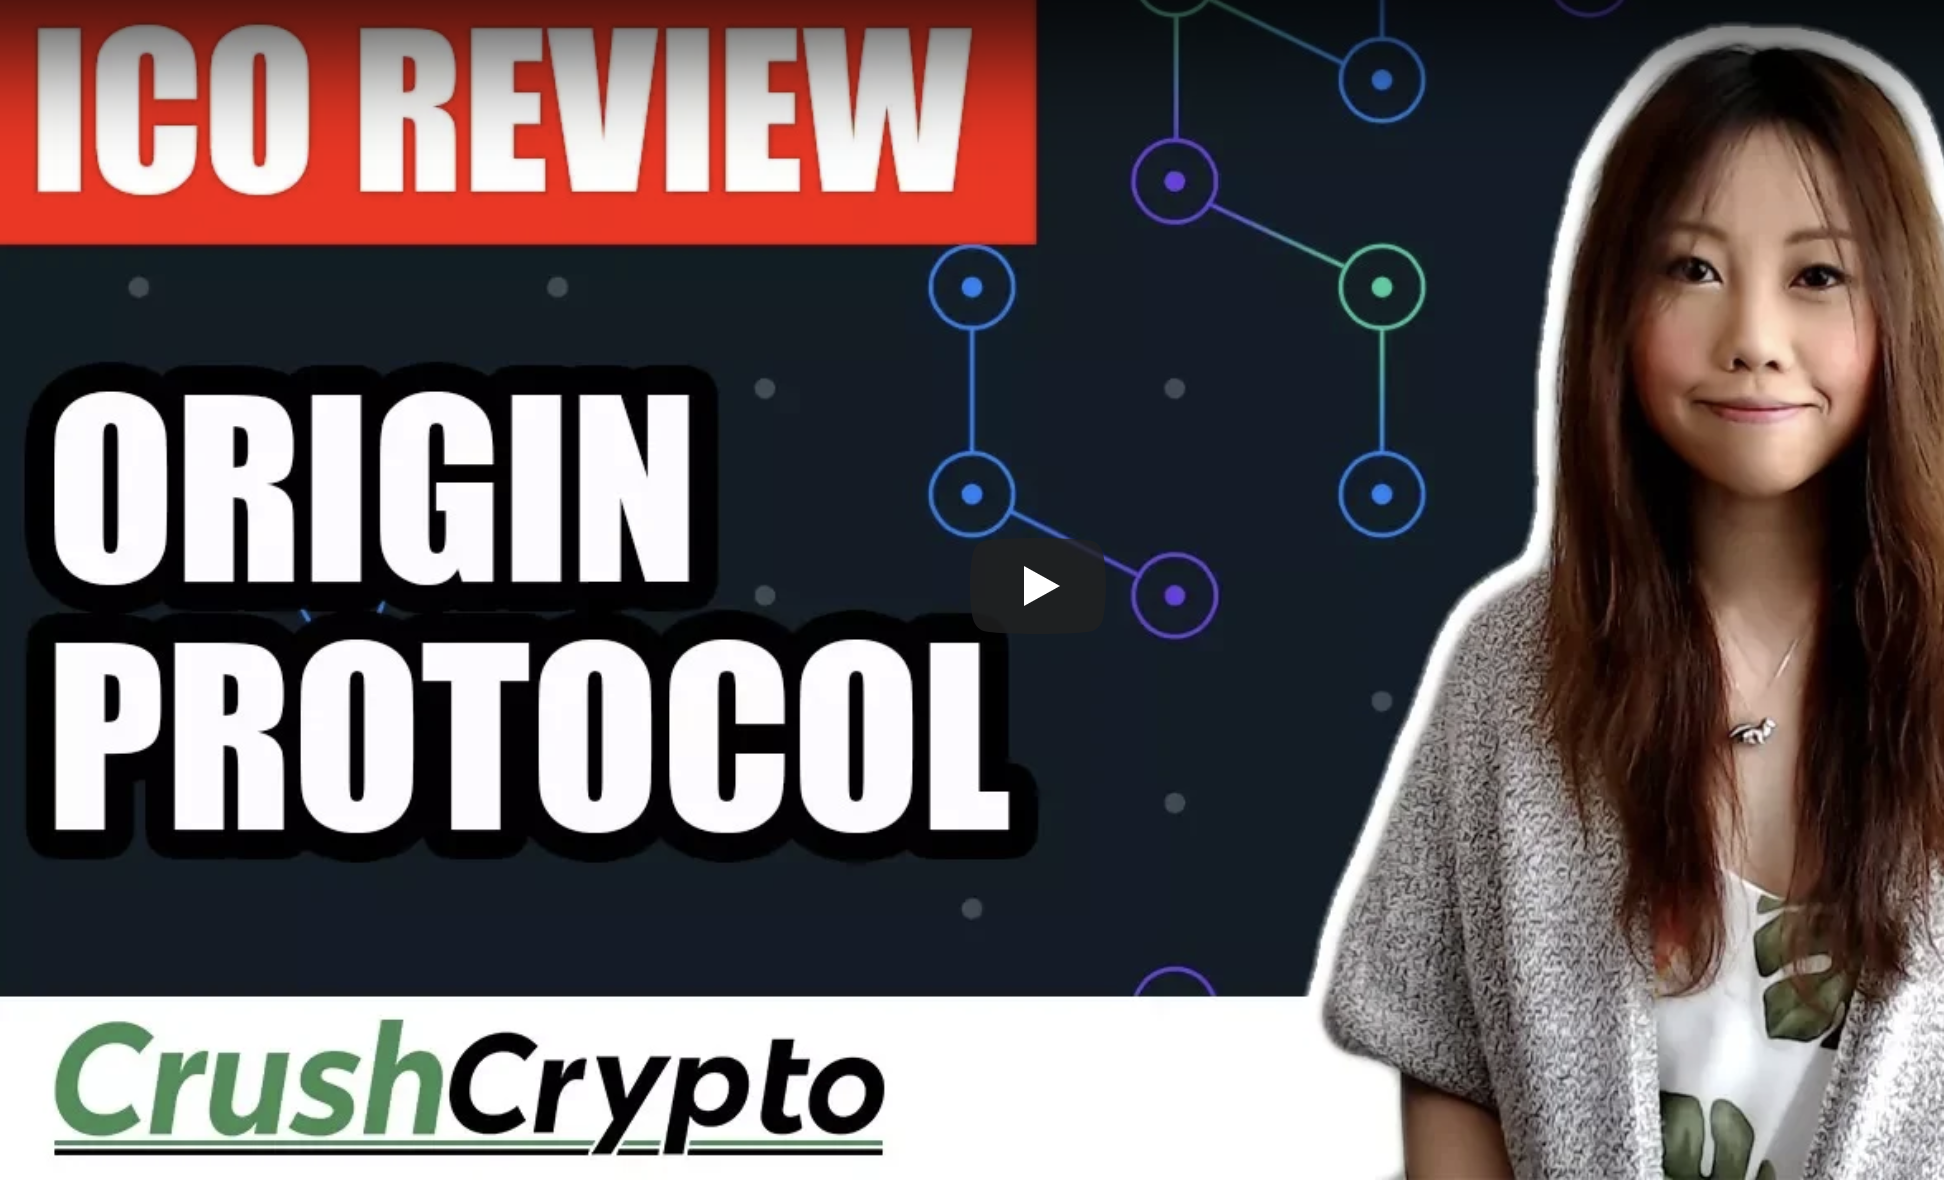 ICO Review: Origin Protocol van Crush Crypto [EN]